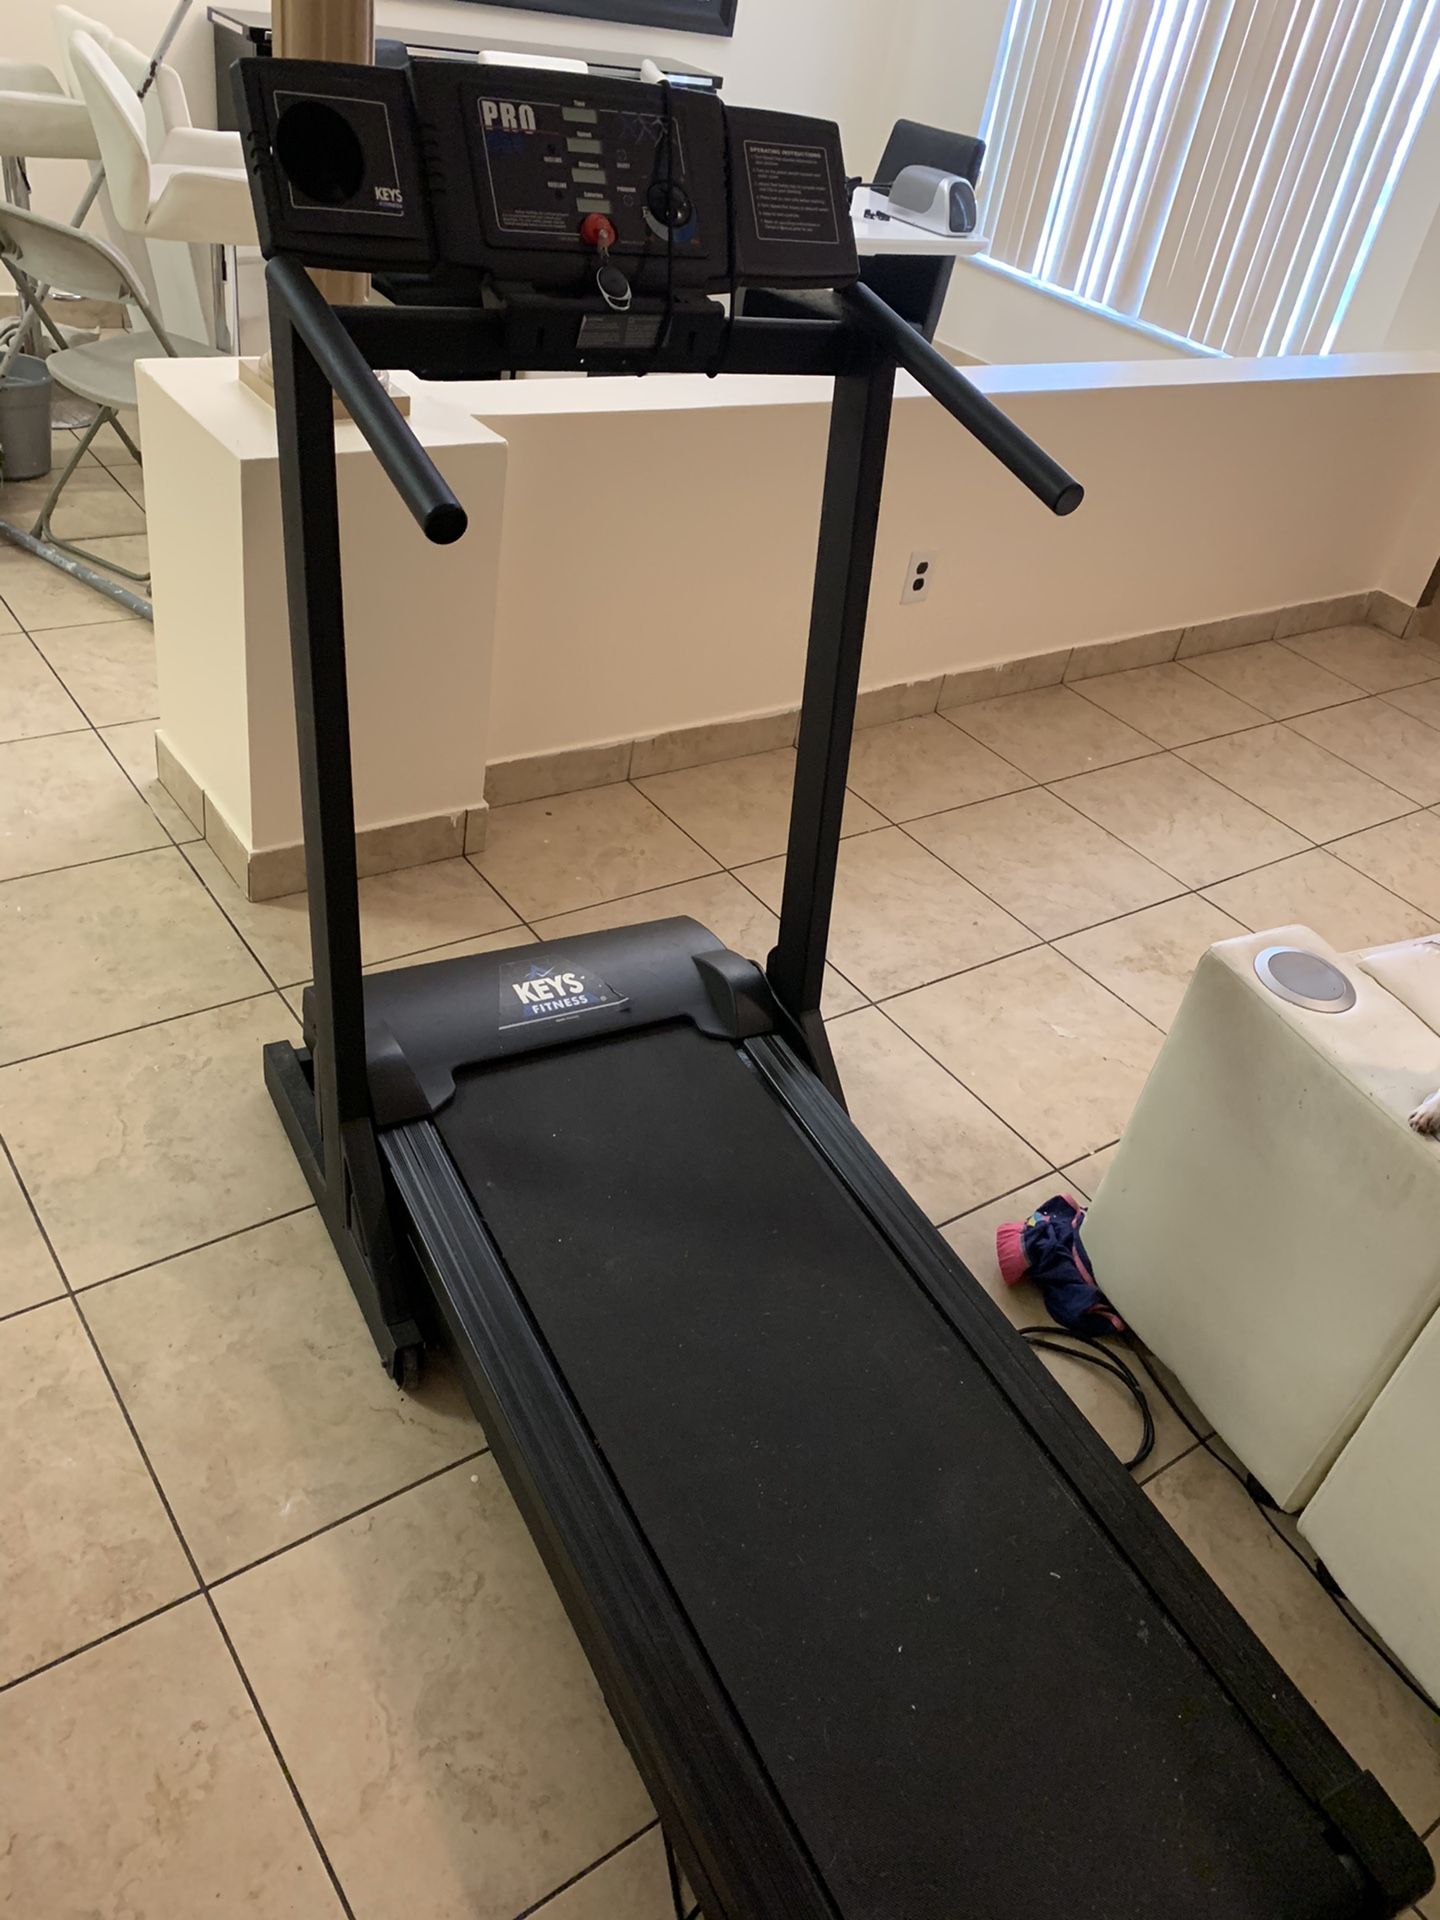 Pro 550 Treadmill